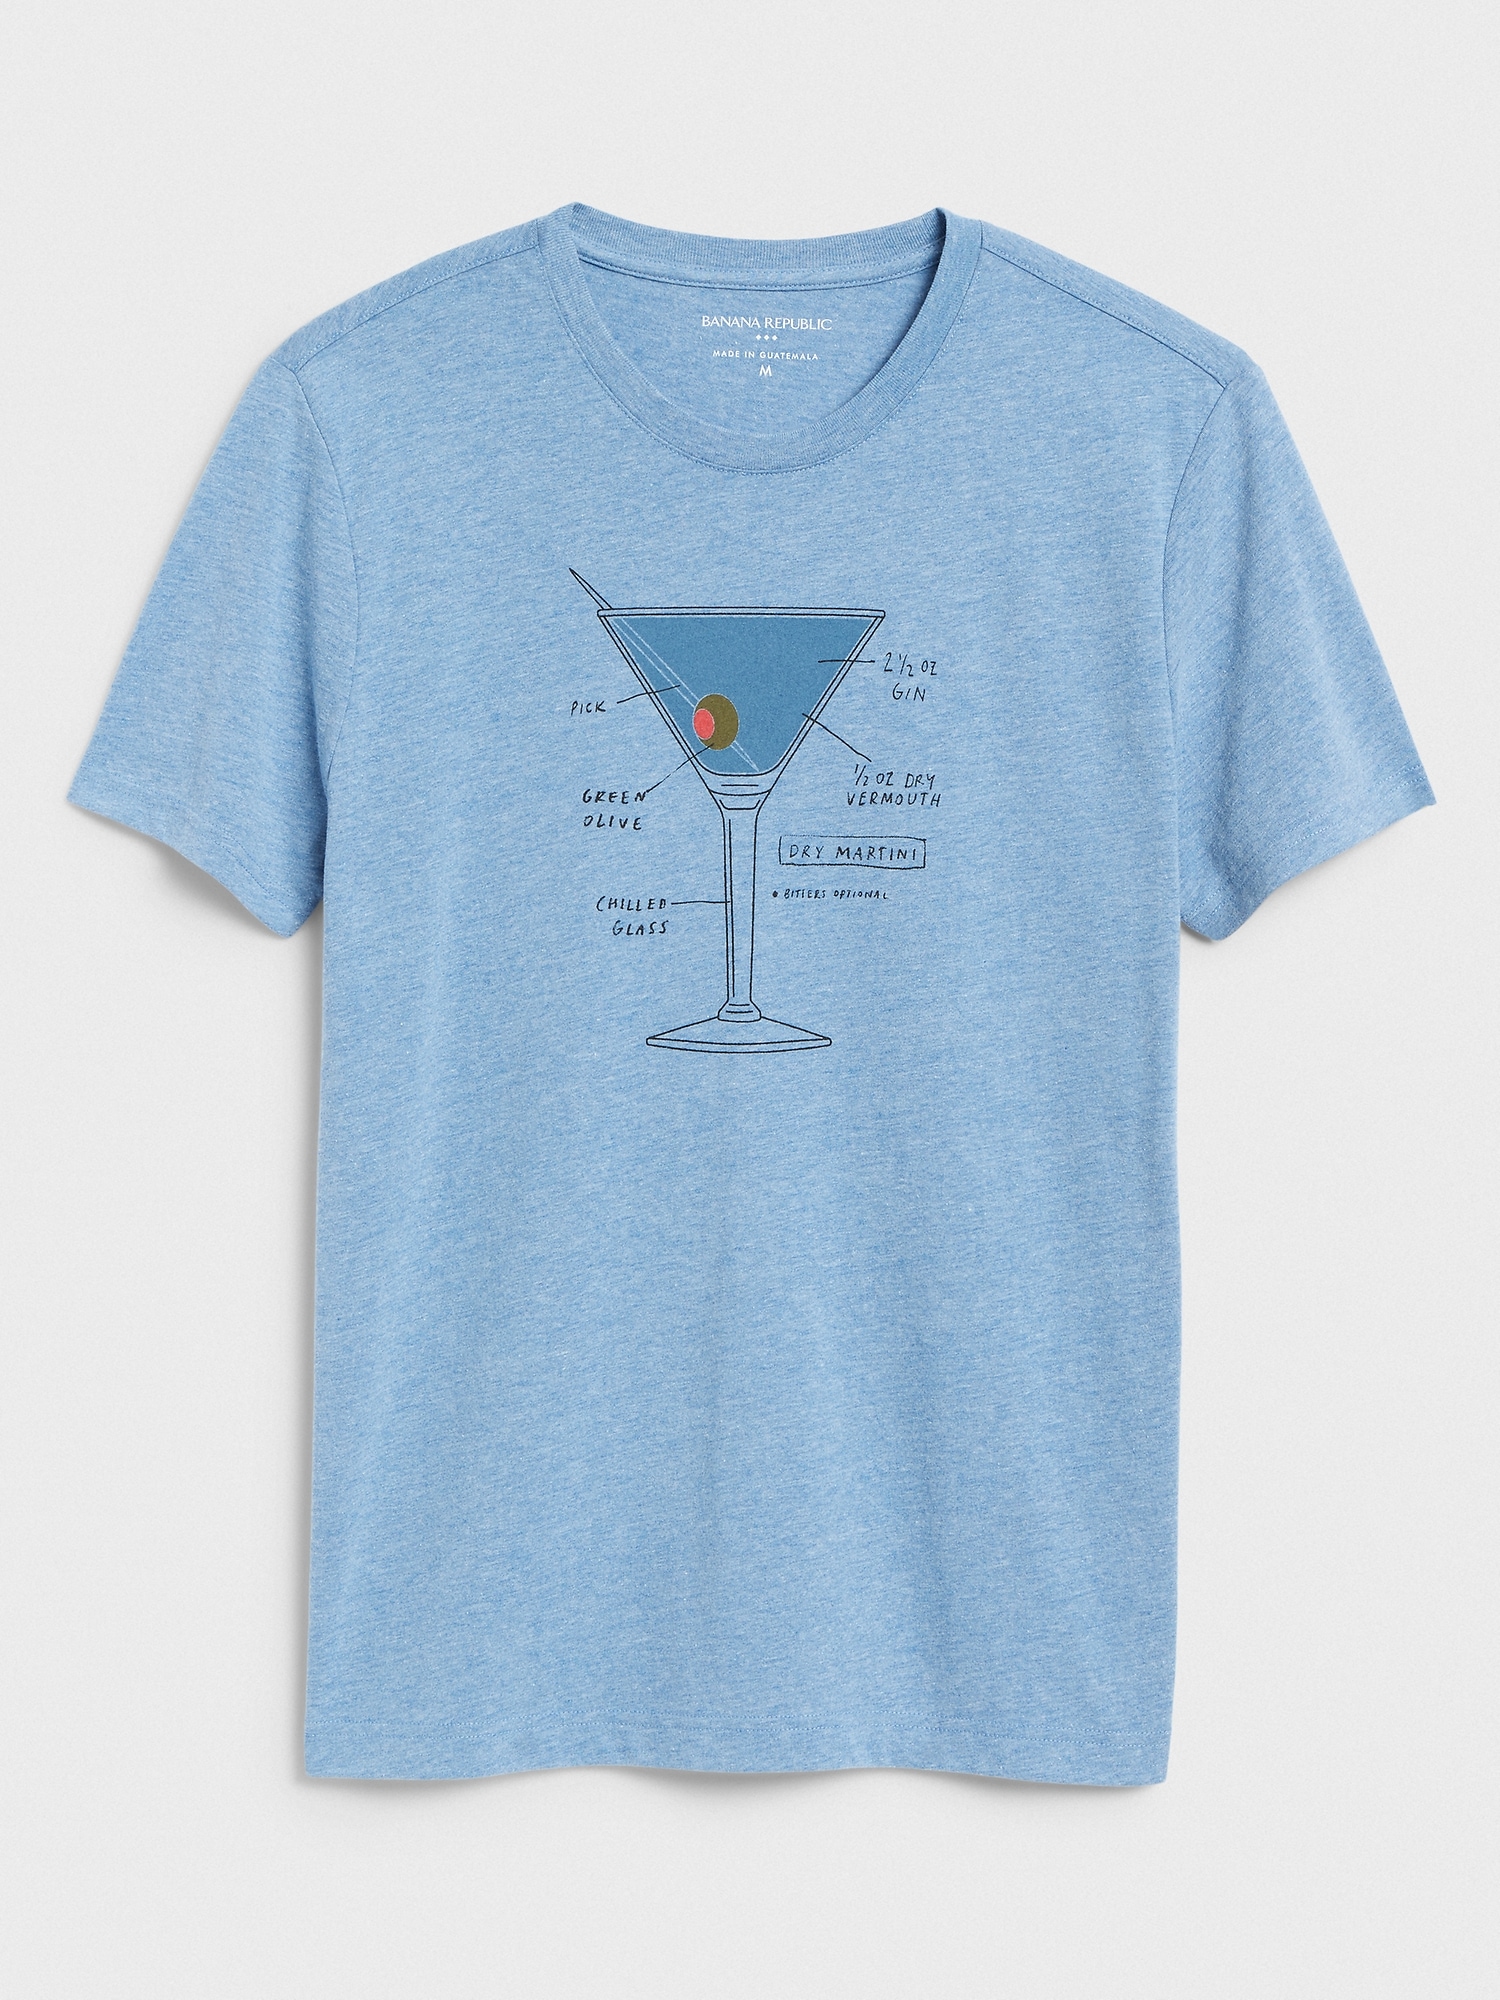 Martini Graphic T-Shirt